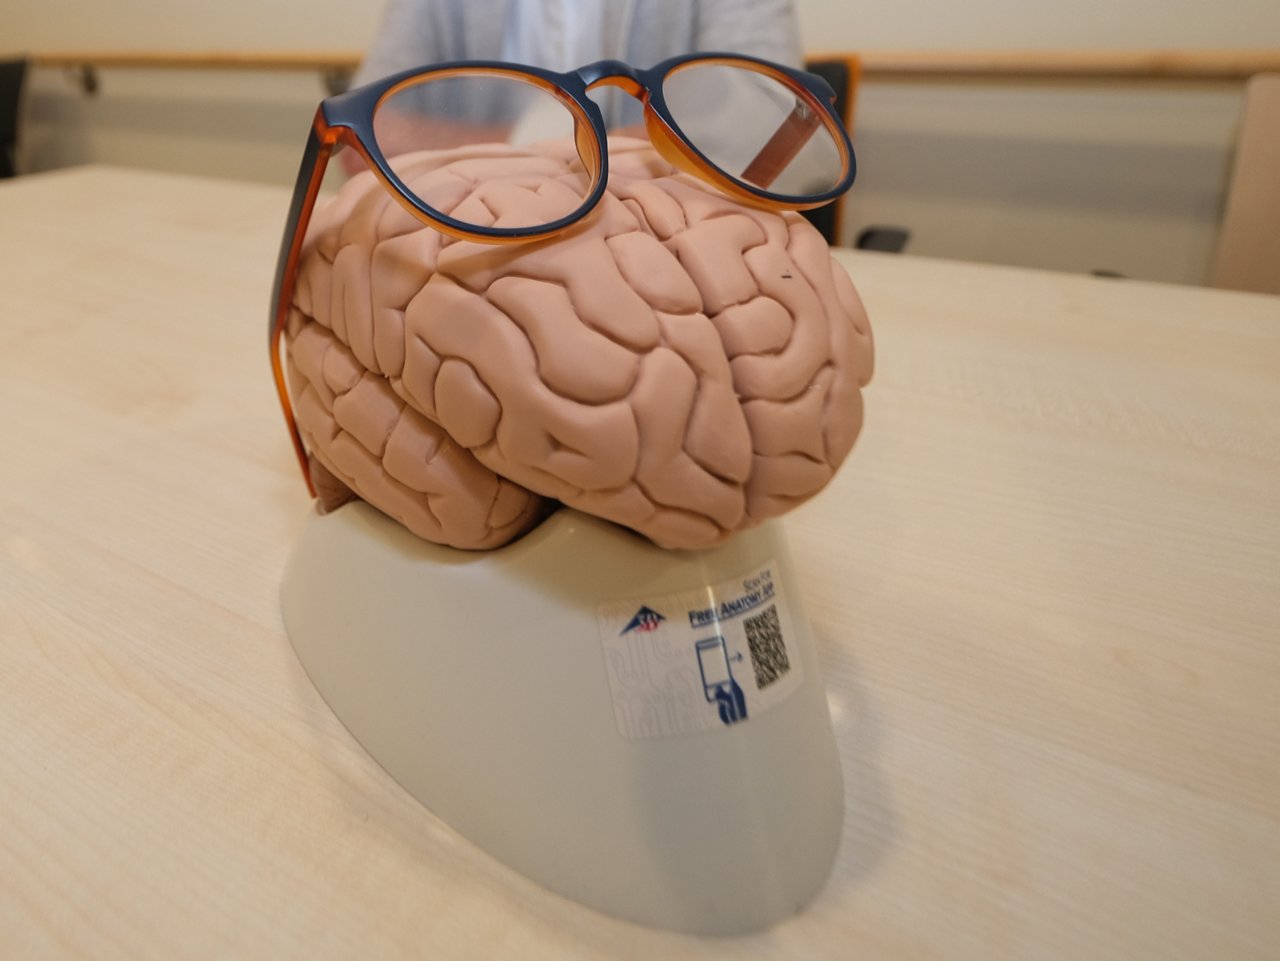 Gehirnmodell mit Brille, Northeim